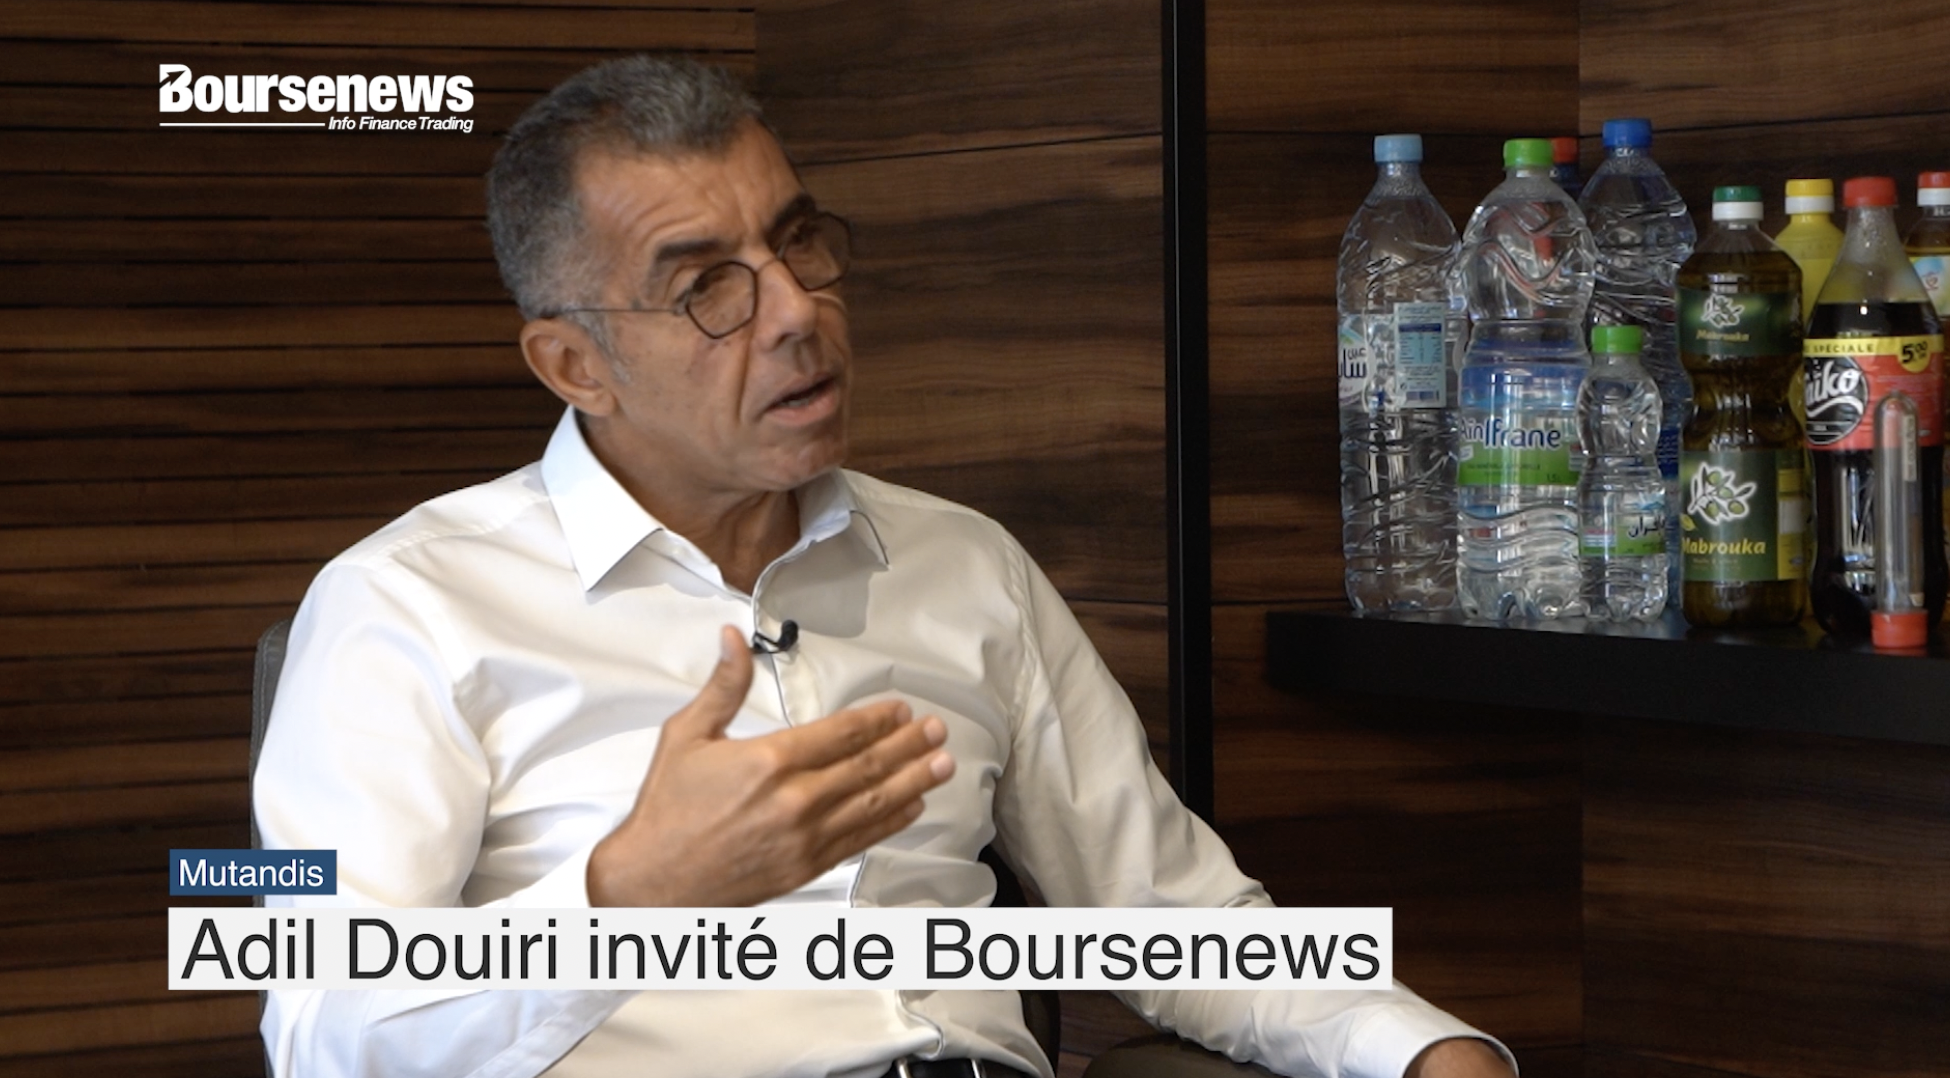 Mutandis: Adil Douiri invité de Boursenews